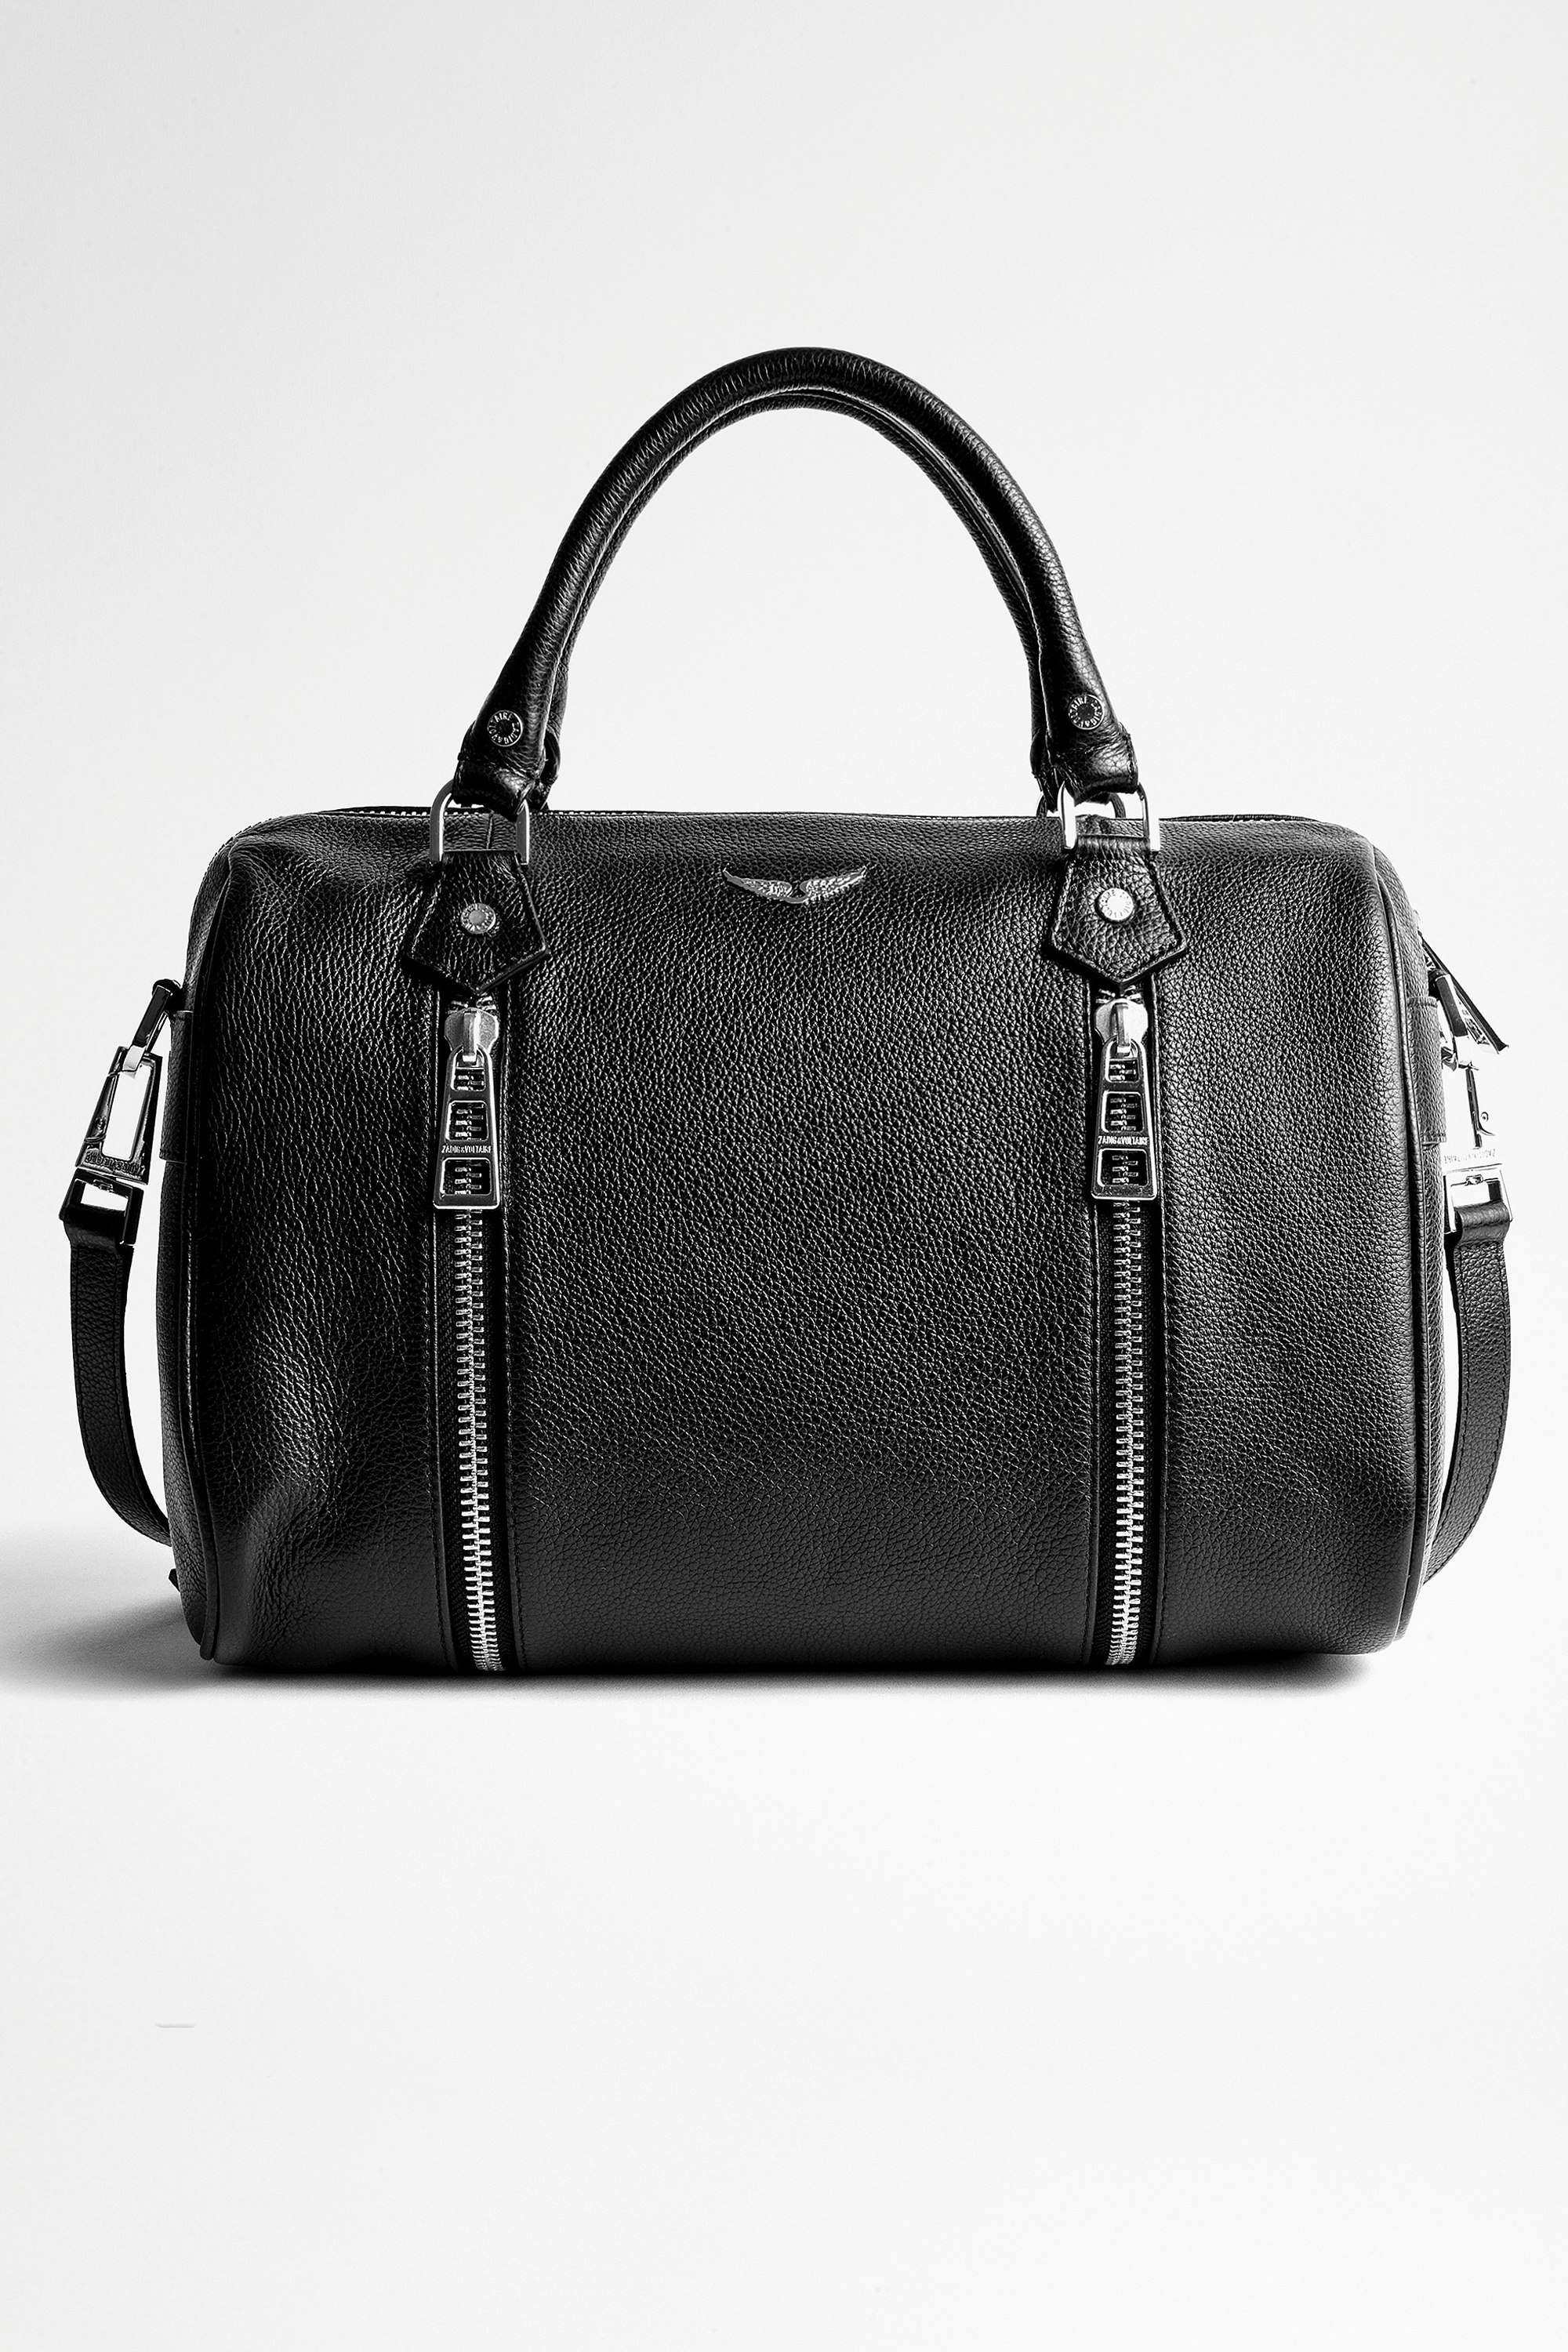 Tasche Sunny Medium - Ikonische Damen-Handtasche Sunny Medium aus schwarzem, genarbtem Leder.